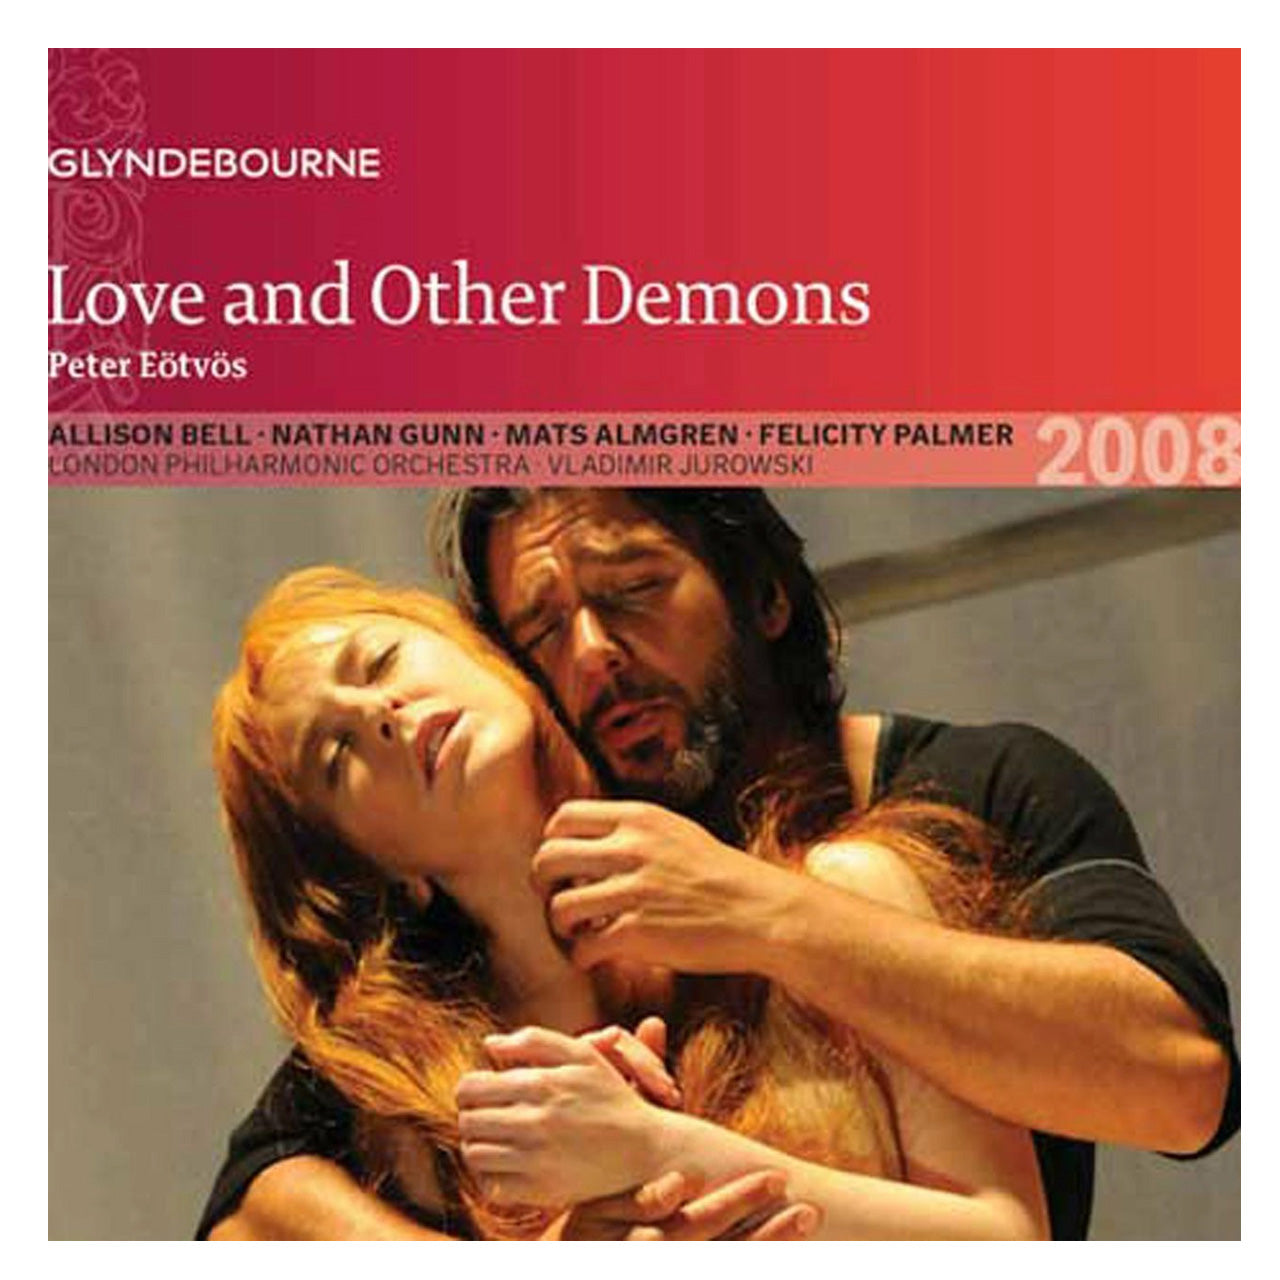 Love and Other Demons CD 2008 Glyndebourne Shop